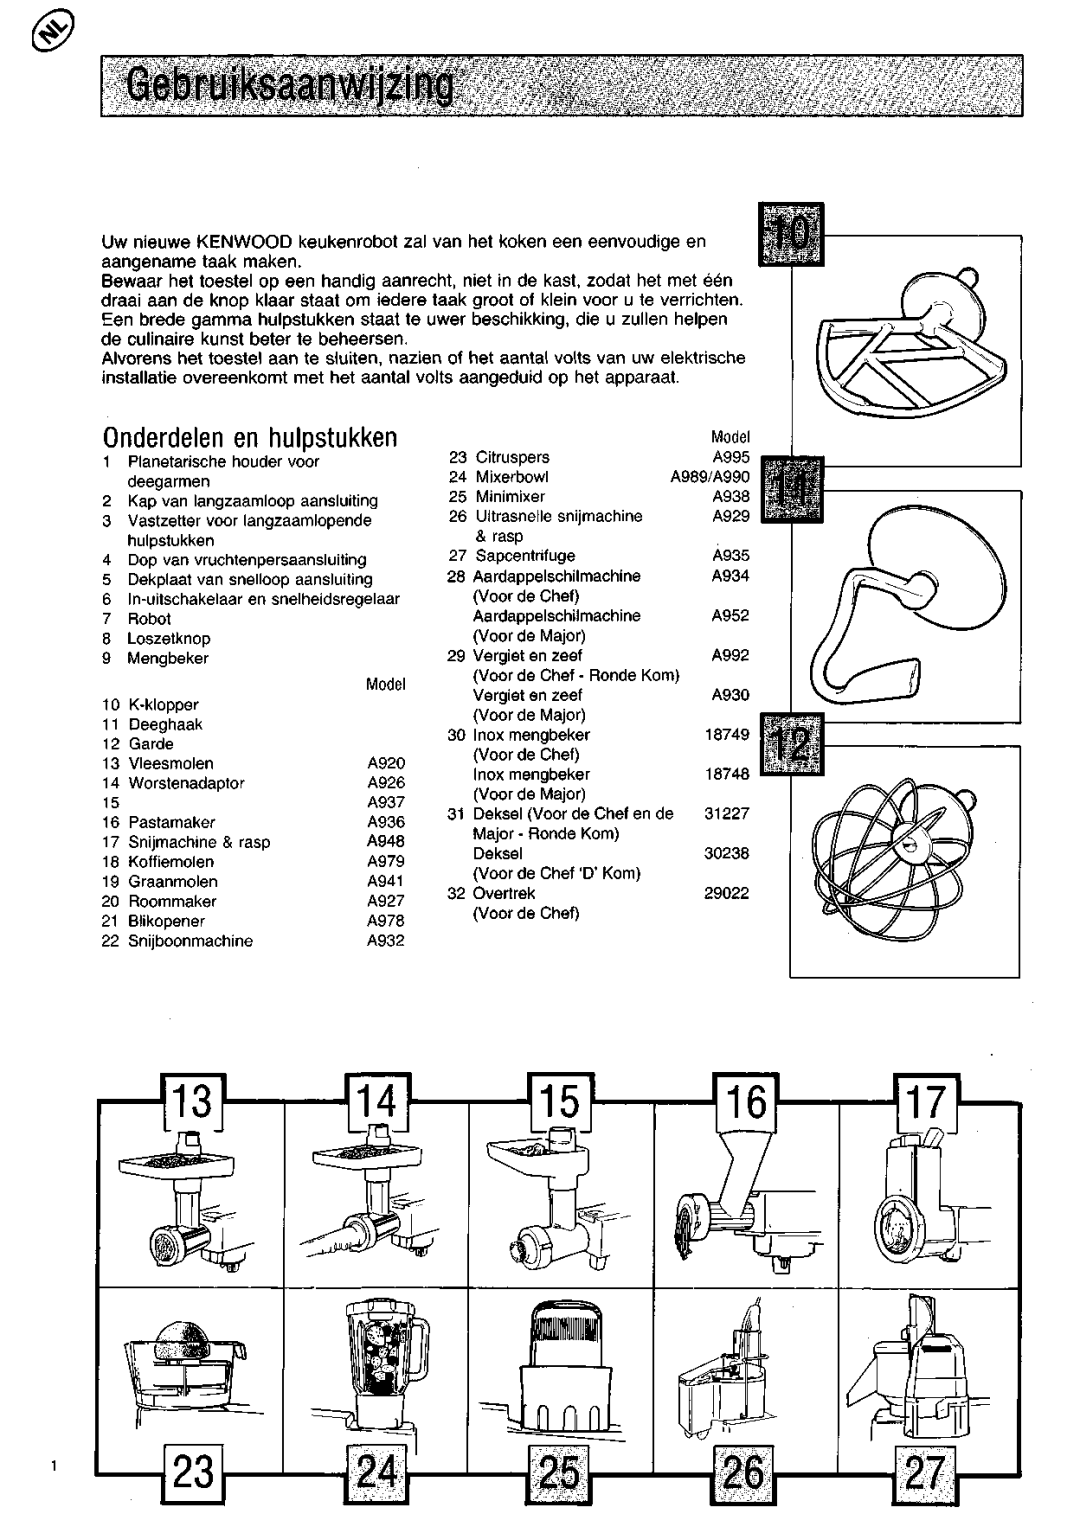 Kenwood KM200 manual Gebruiksaanwijzing, Onderdelen en hulpstukken 